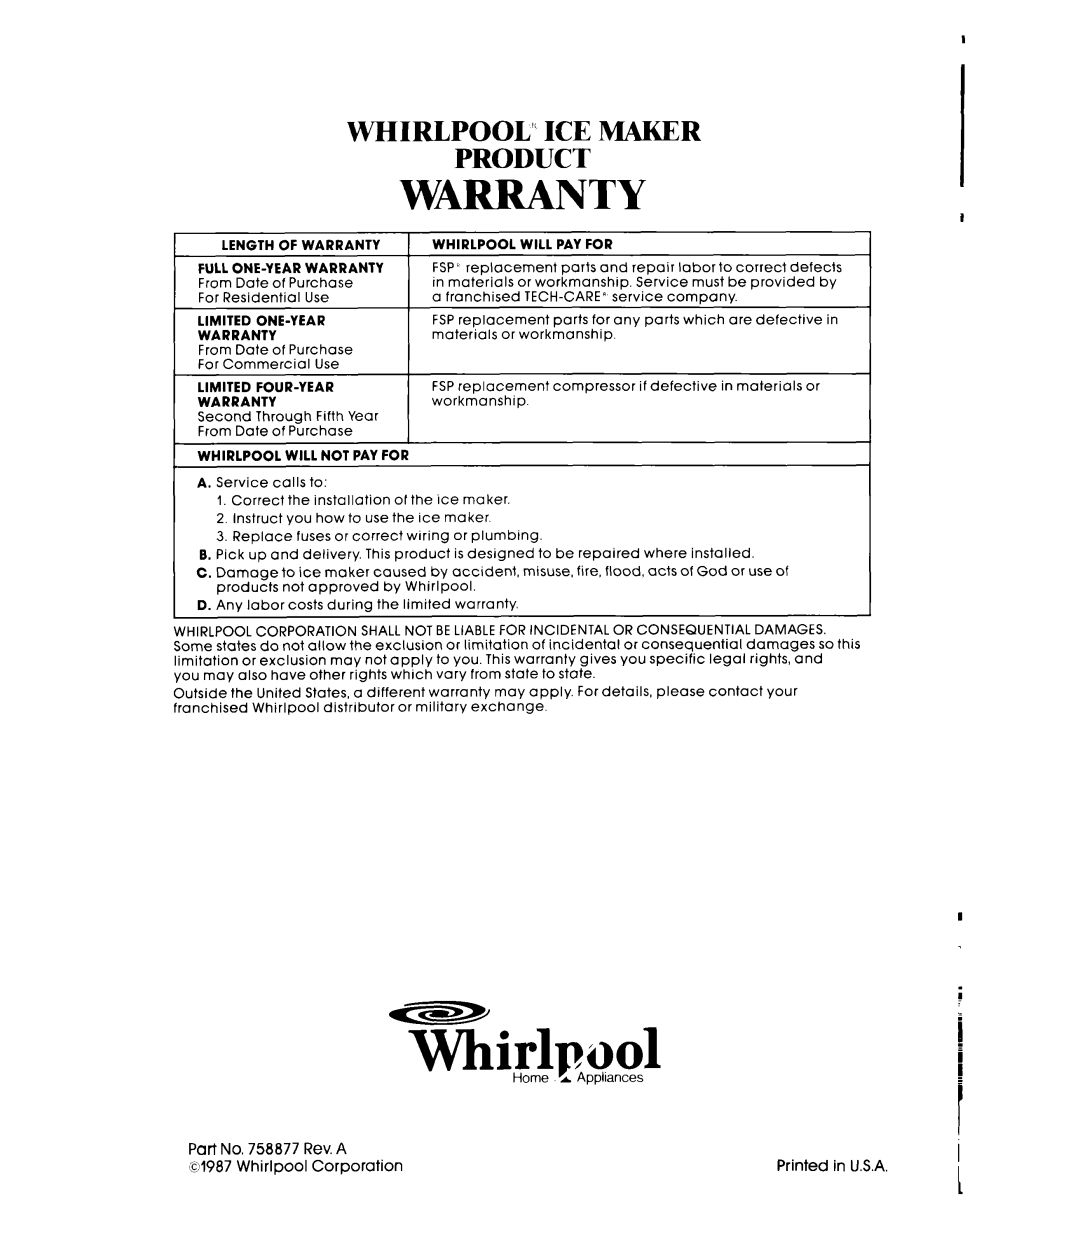 Whirlpool EC5100 manual Whirlpool”, TKirlpuol, Warranty, Ice Maker, Product 